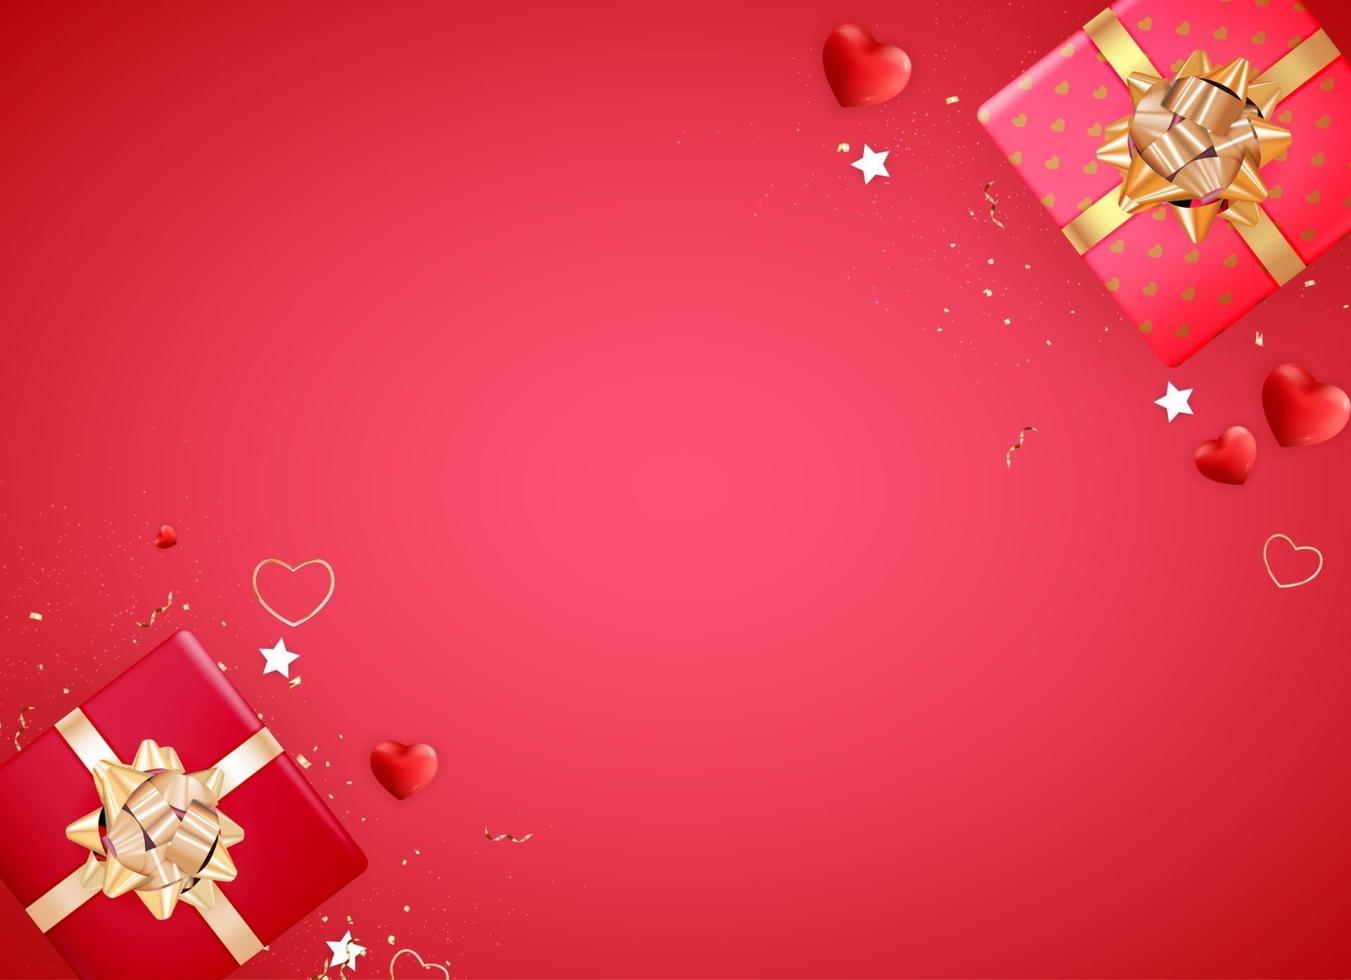 Diseño de fondo del día de San Valentín con labios y corazones realistas para plantilla para publicidad o web o redes sociales y anuncios de moda vector